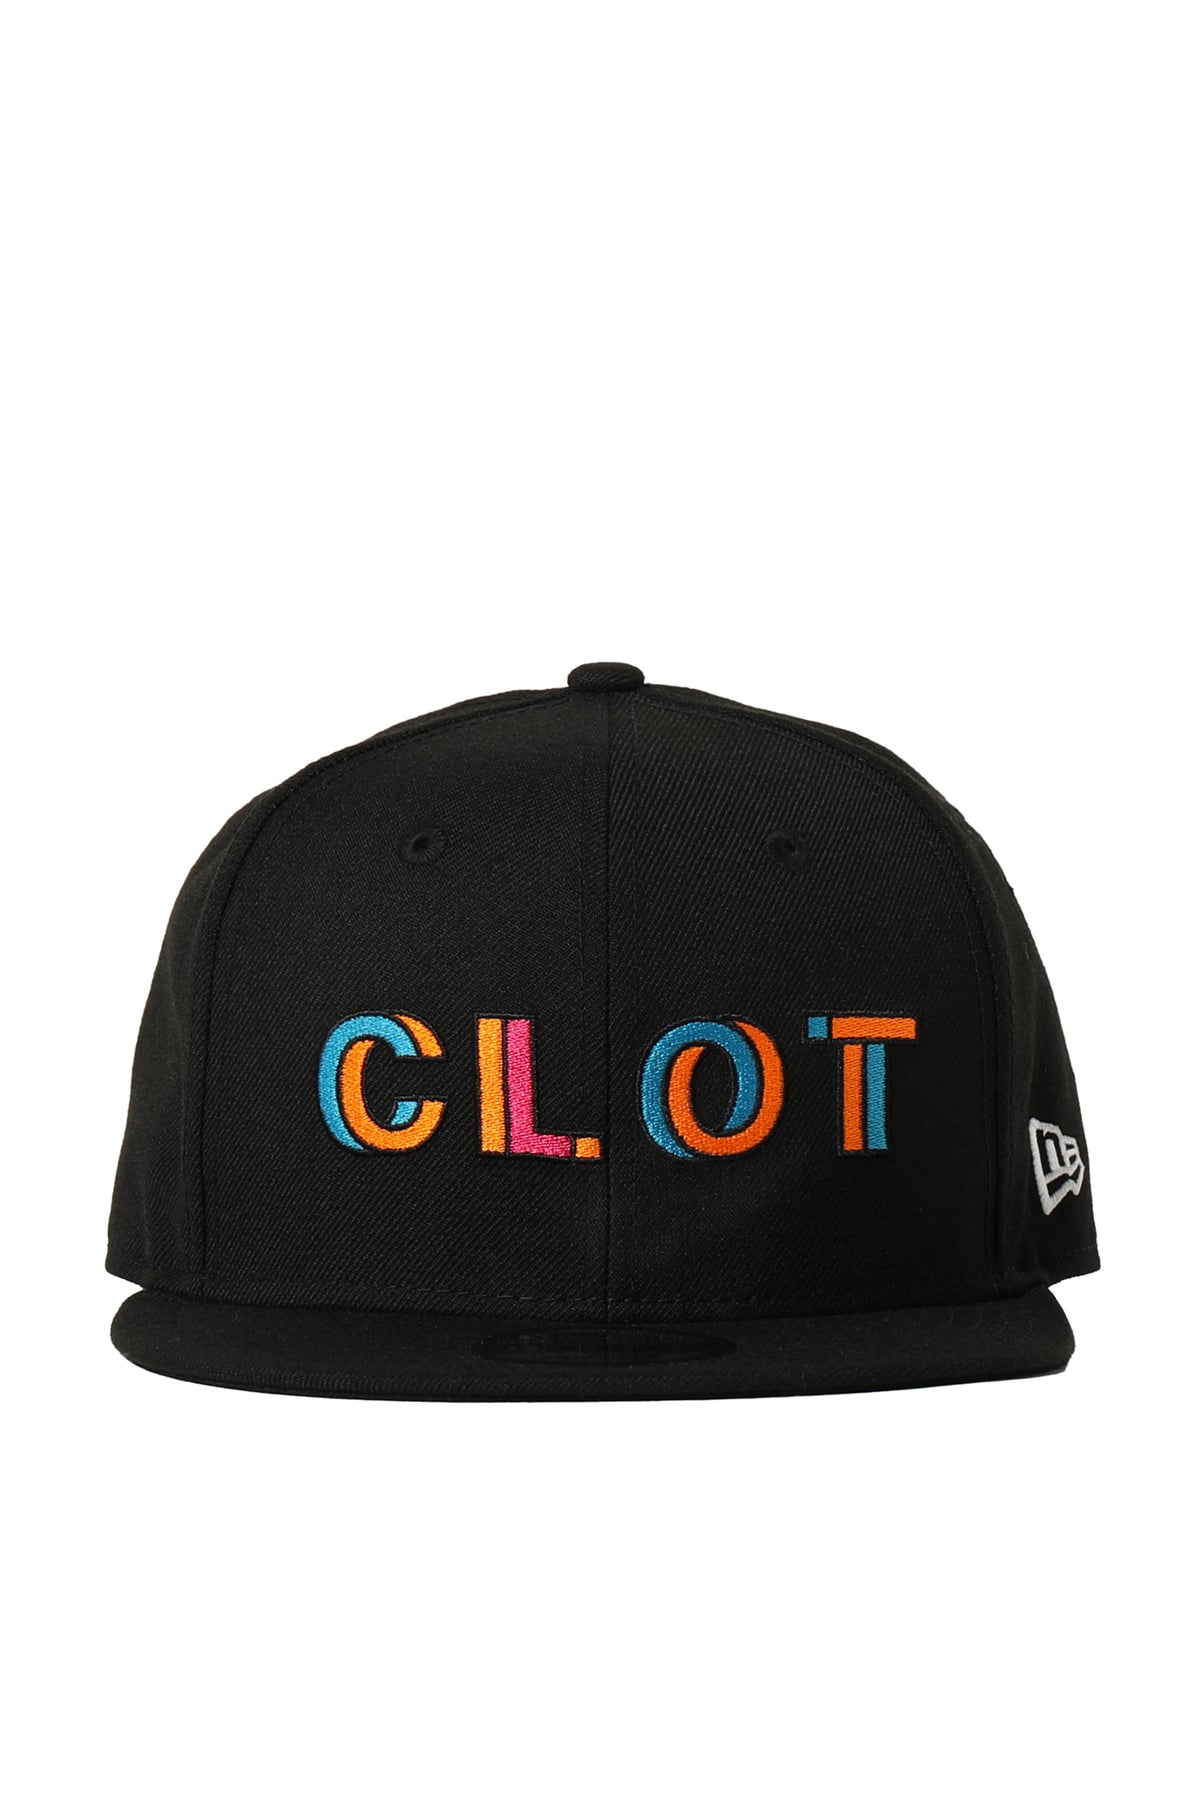 CLOT CLOT CAP / BLK